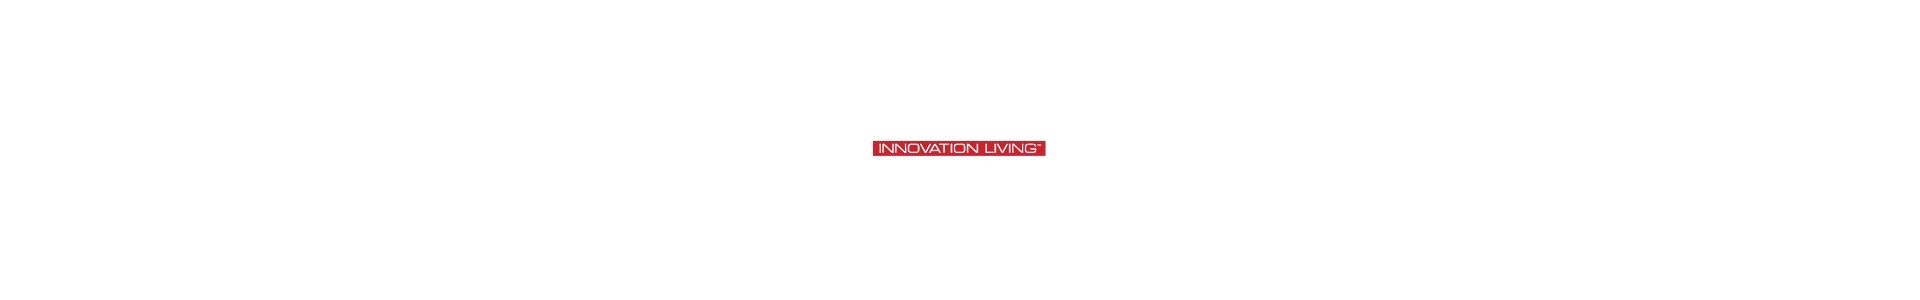 Innovation Living